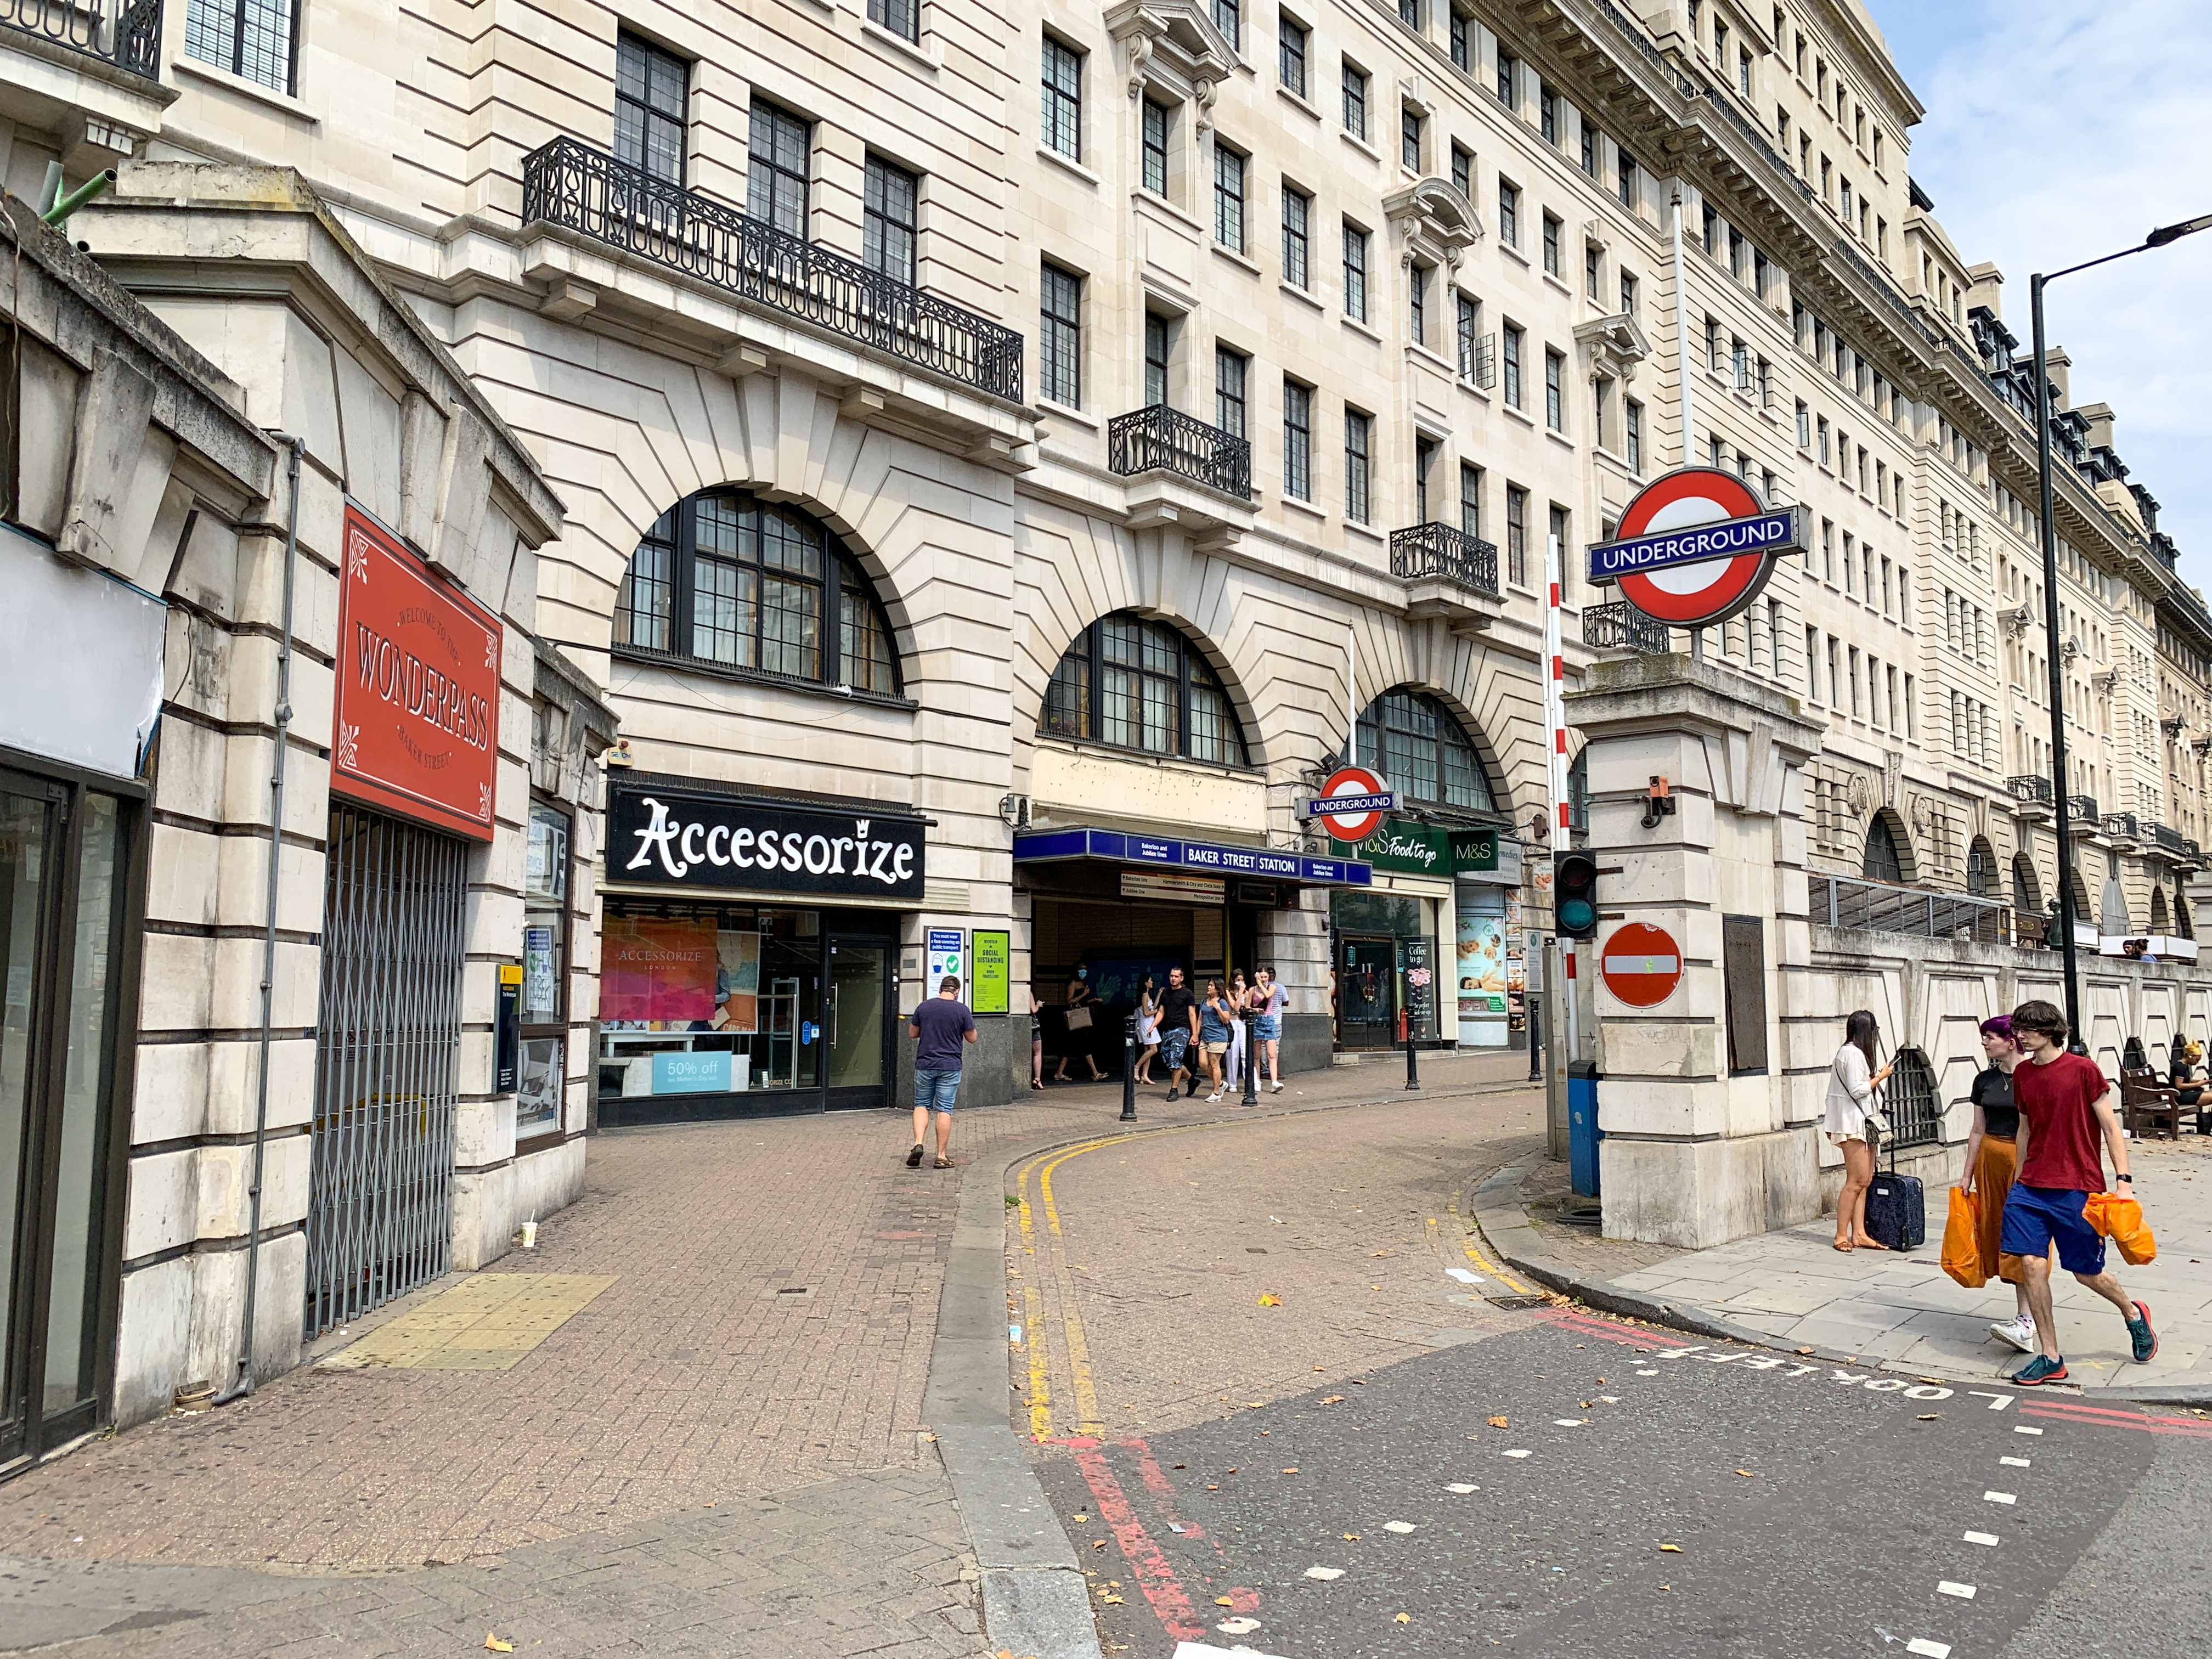 Baker Street tube station - Wikipedia